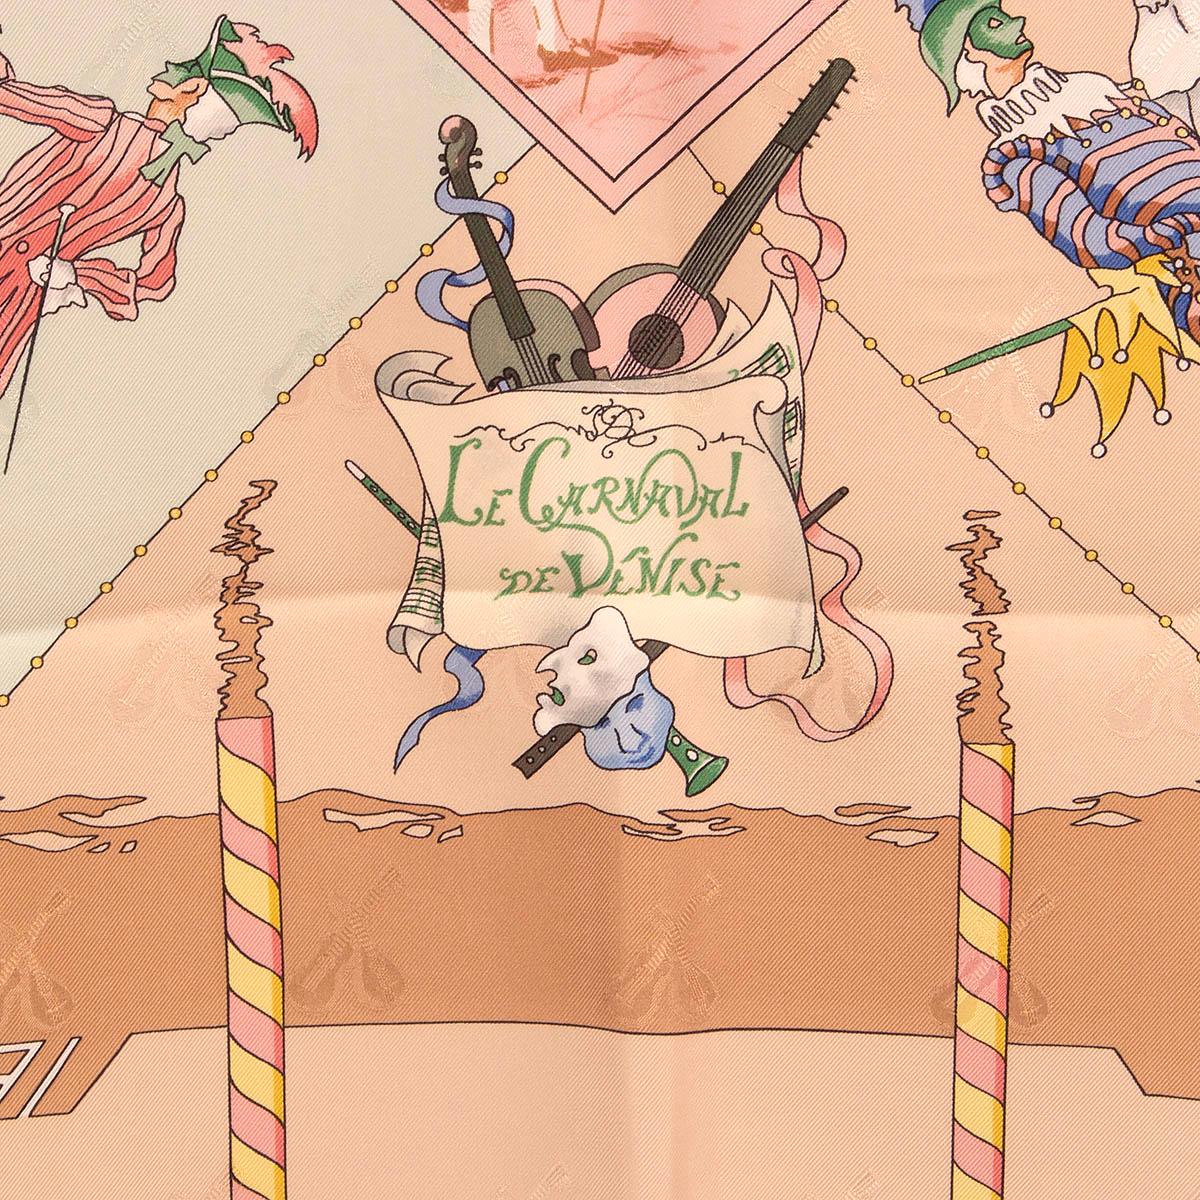 100% authentischer Hermès 'Le Carnaval de Venise 90' Schal von Hubert de Watrigant aus beigem und rosafarbenem Seidenjacquard (100%) mit Details in Mint, Grün, Gelb und Braun. Wurde getragen und ist in ausgezeichnetem Zustand.

Messungen
Breite	90cm